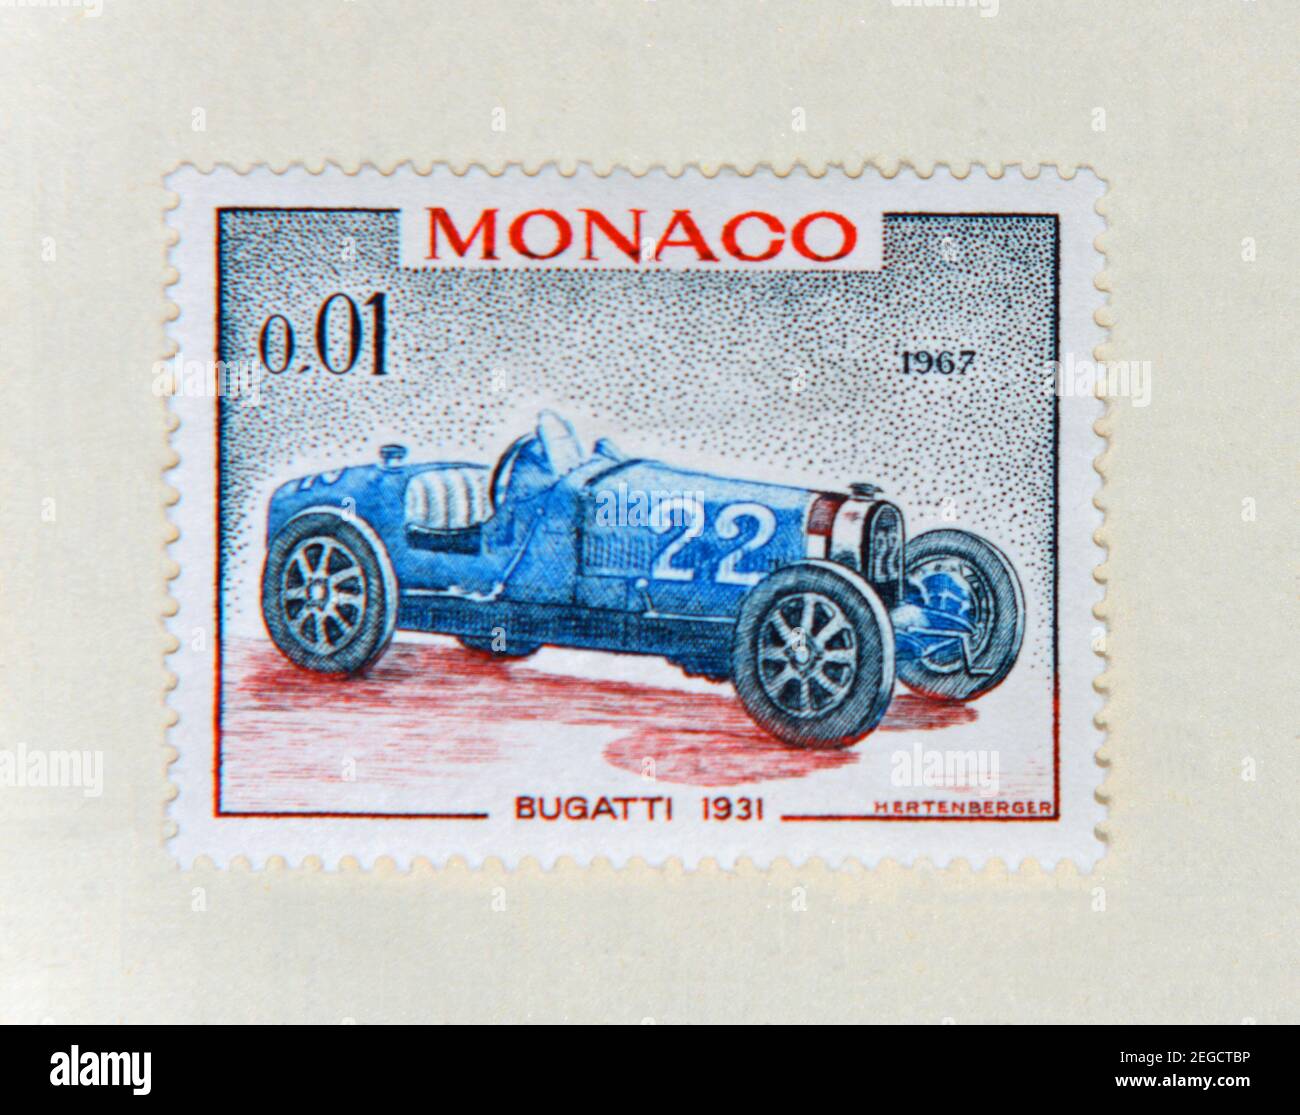 Timbre-poste de Monaco 1967 montrant une voiture de course Blue Bugatti 1931. Banque D'Images